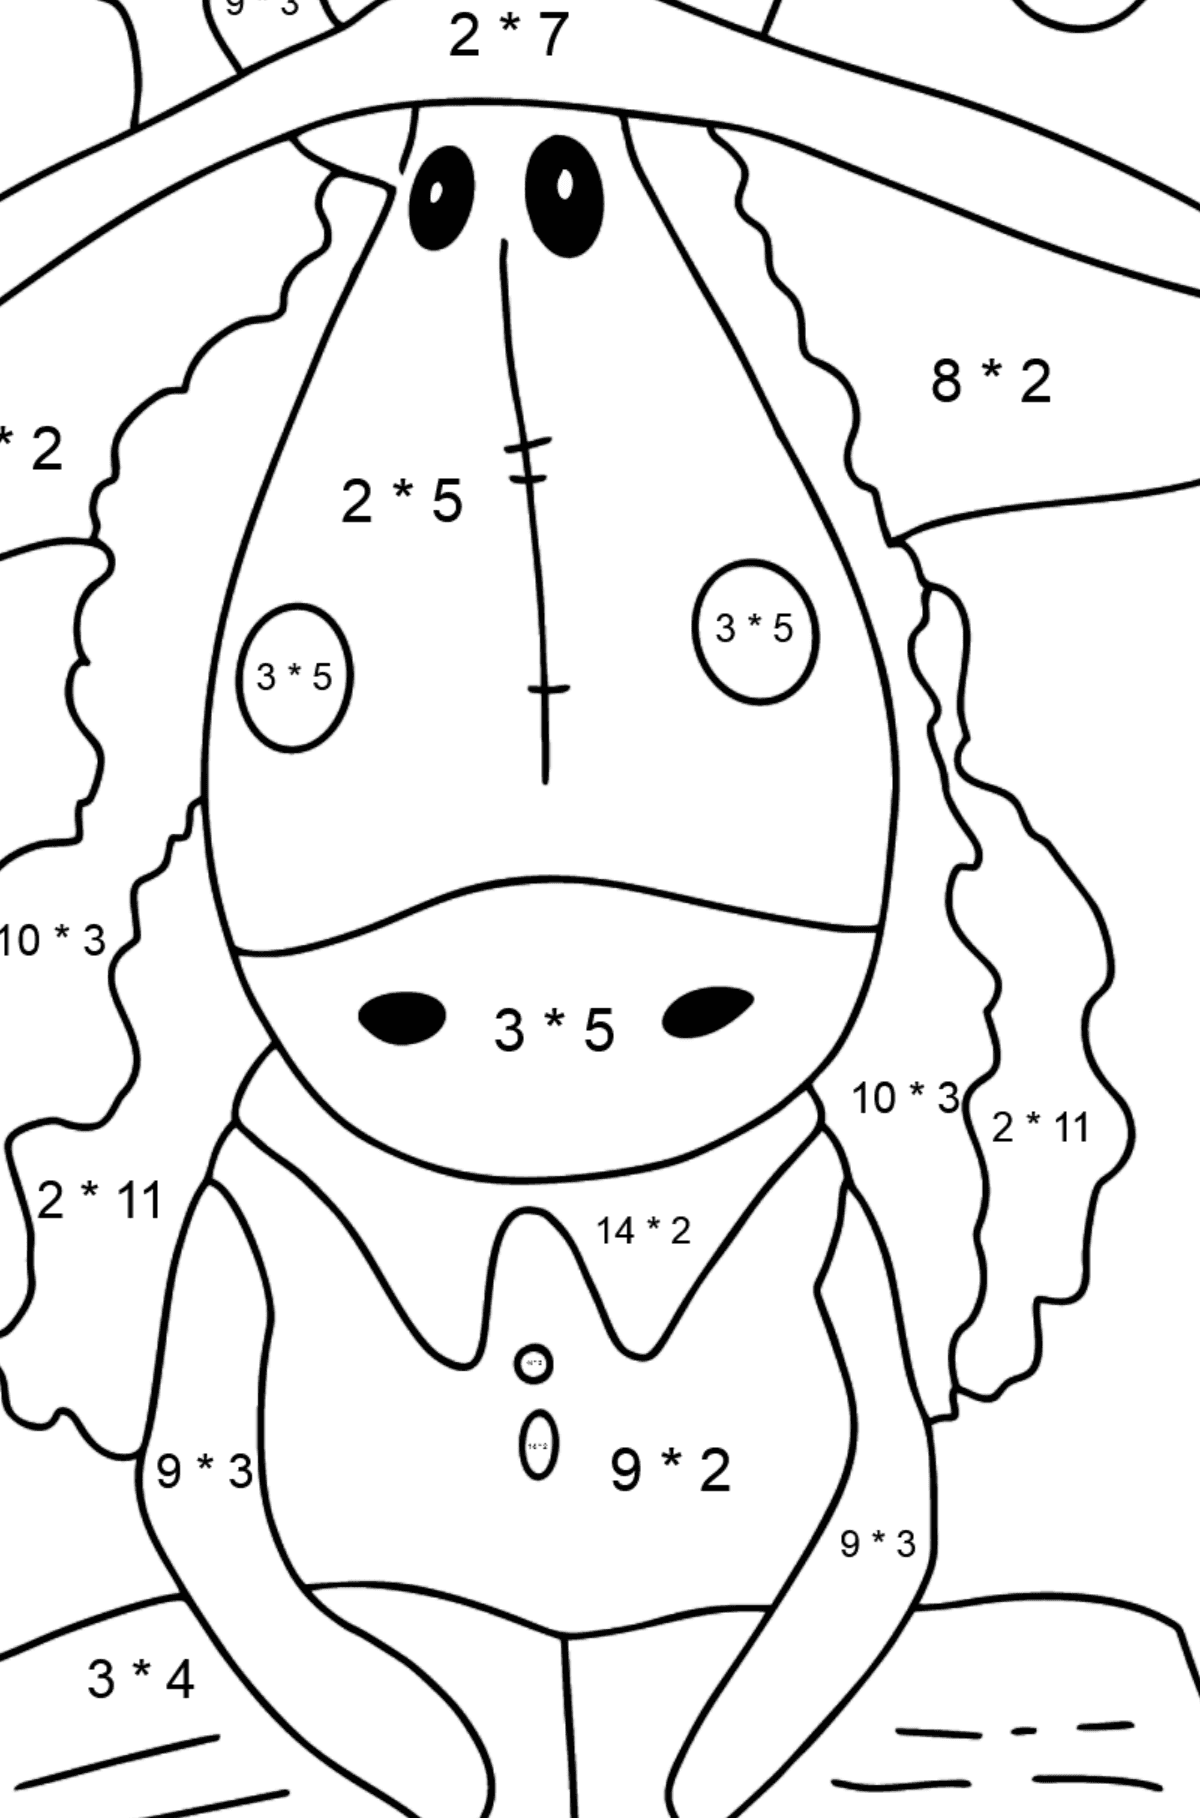 Desenho de Cavalo curioso para colorir difícil - Colorindo com Matemática - Multiplicação para Crianças